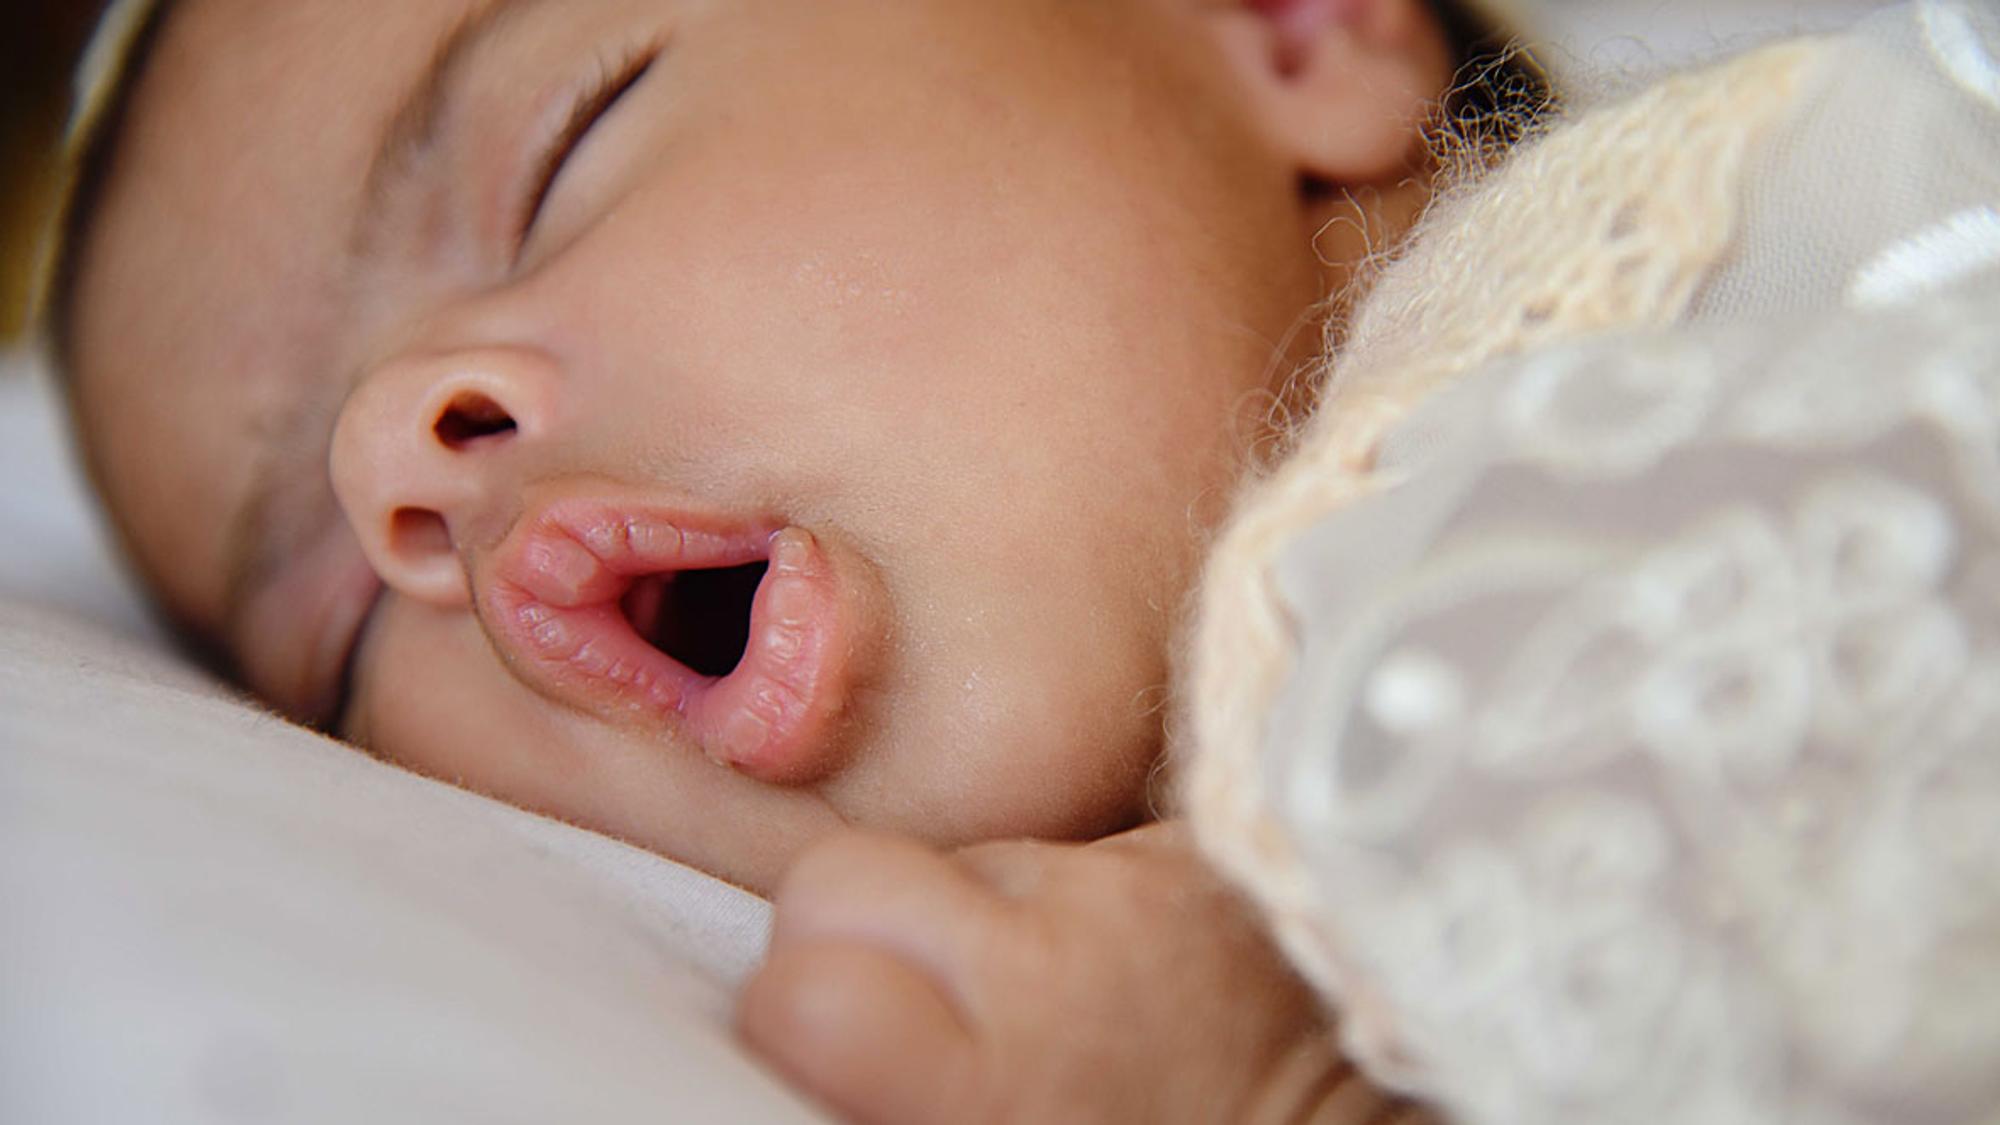 Nasensauger-Staubsauger  Hilfe bei verstopften Baby-Nasen